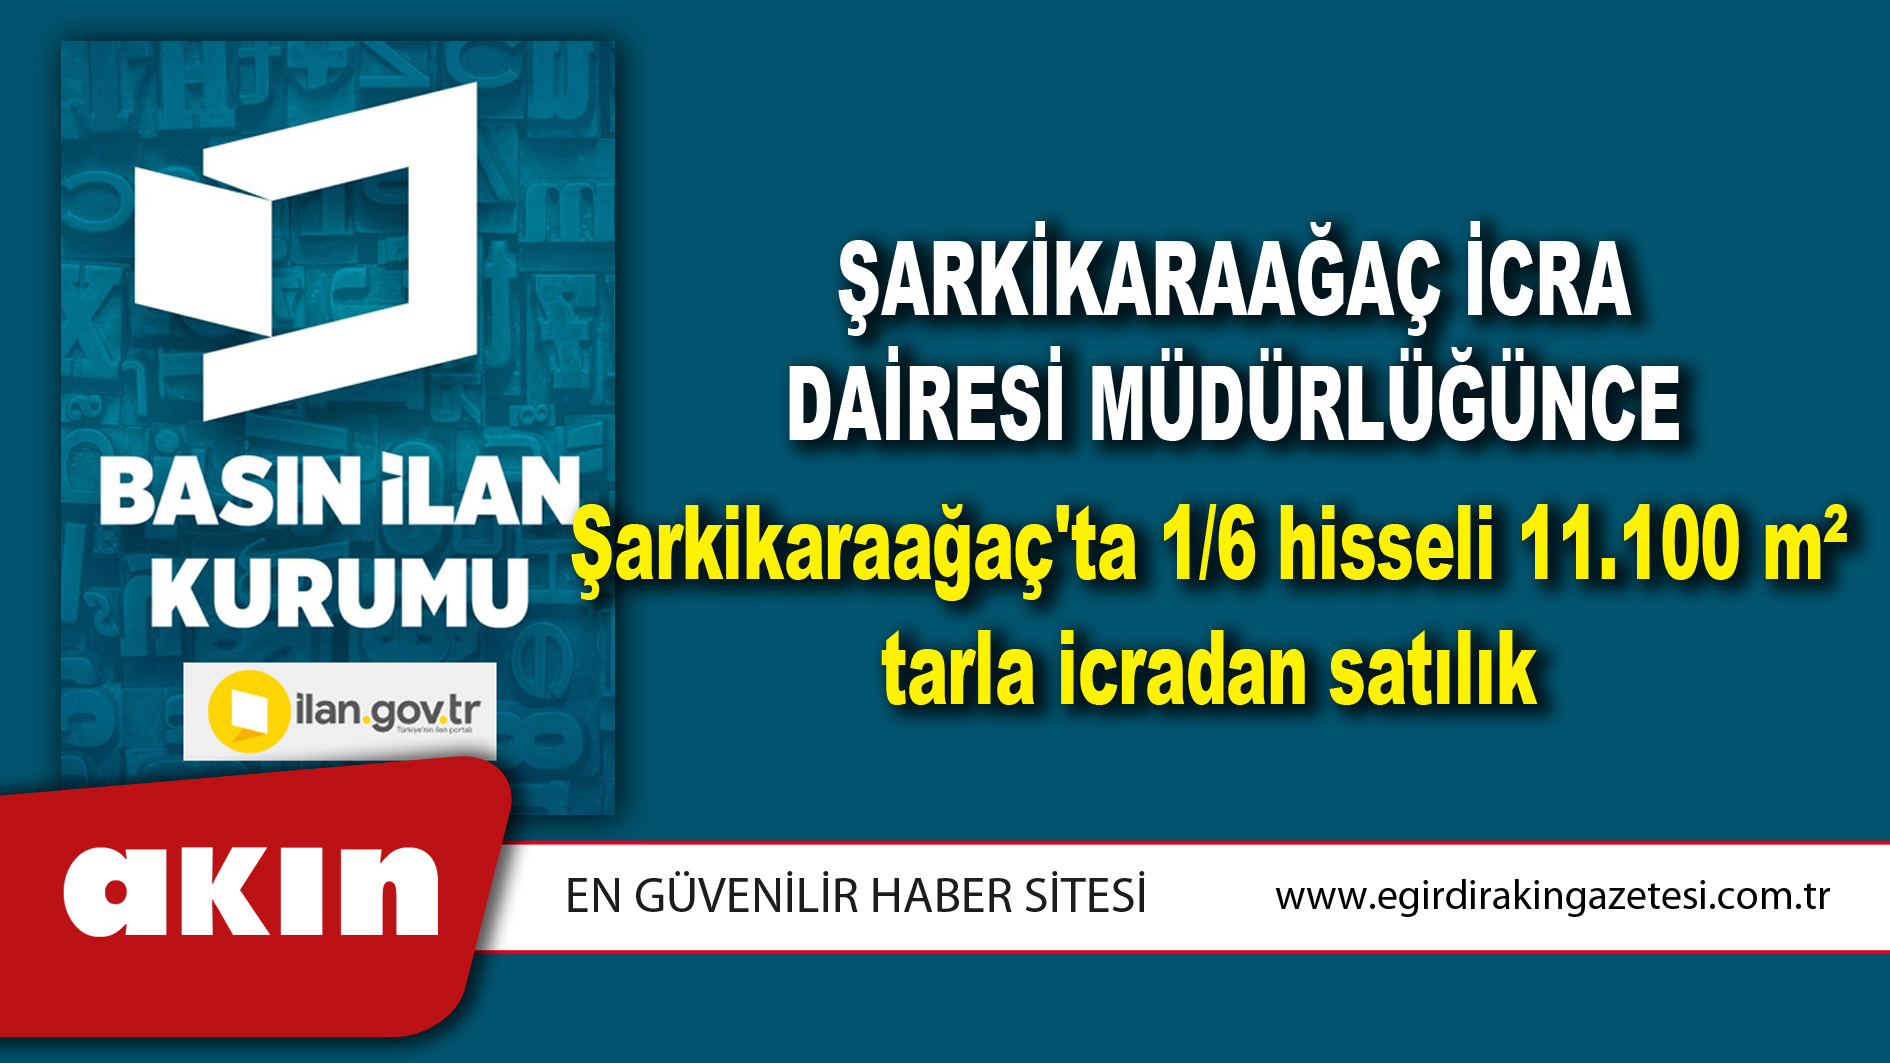 Şarkikaraağaç İcra Dairesi Müdürlüğünce Şarkikaraağaç'ta 1/6 hisseli 11.100 m² tarla icradan satılık